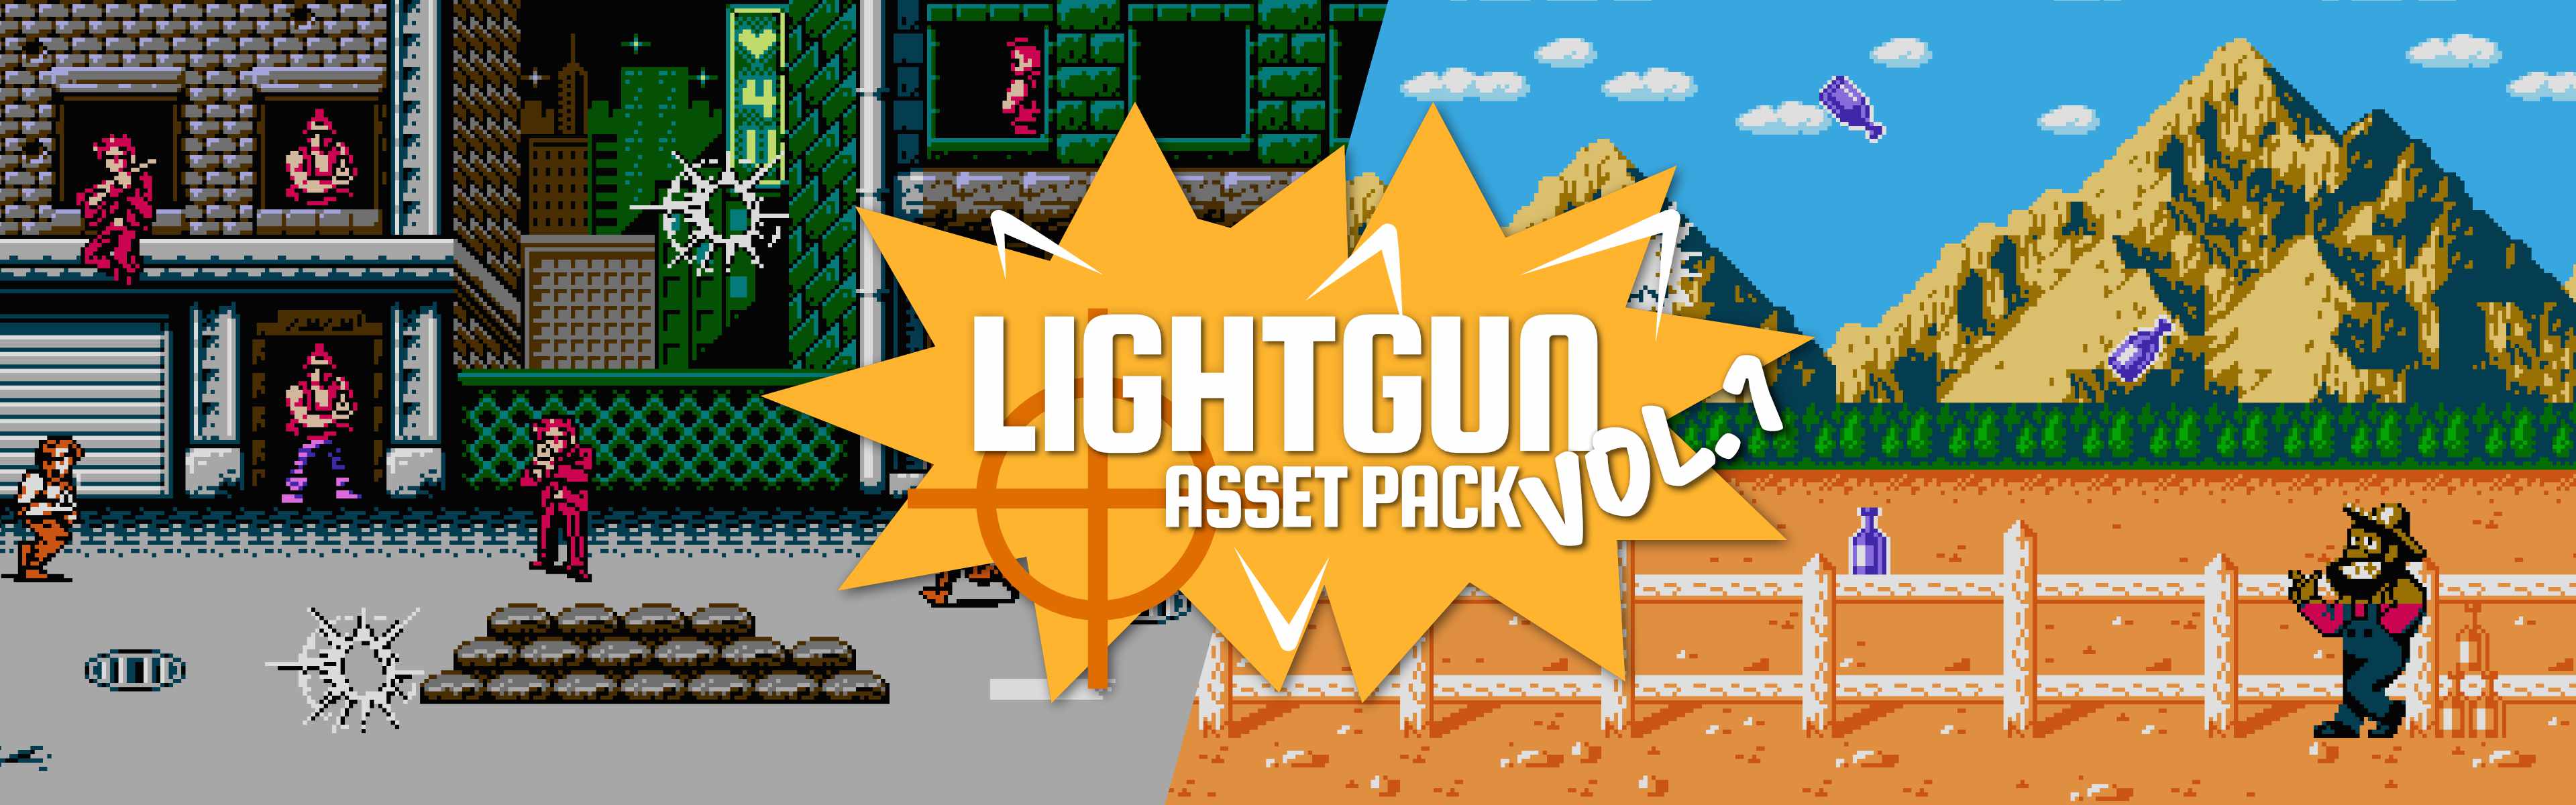 NES Light Gun Asset Pack Vol.1